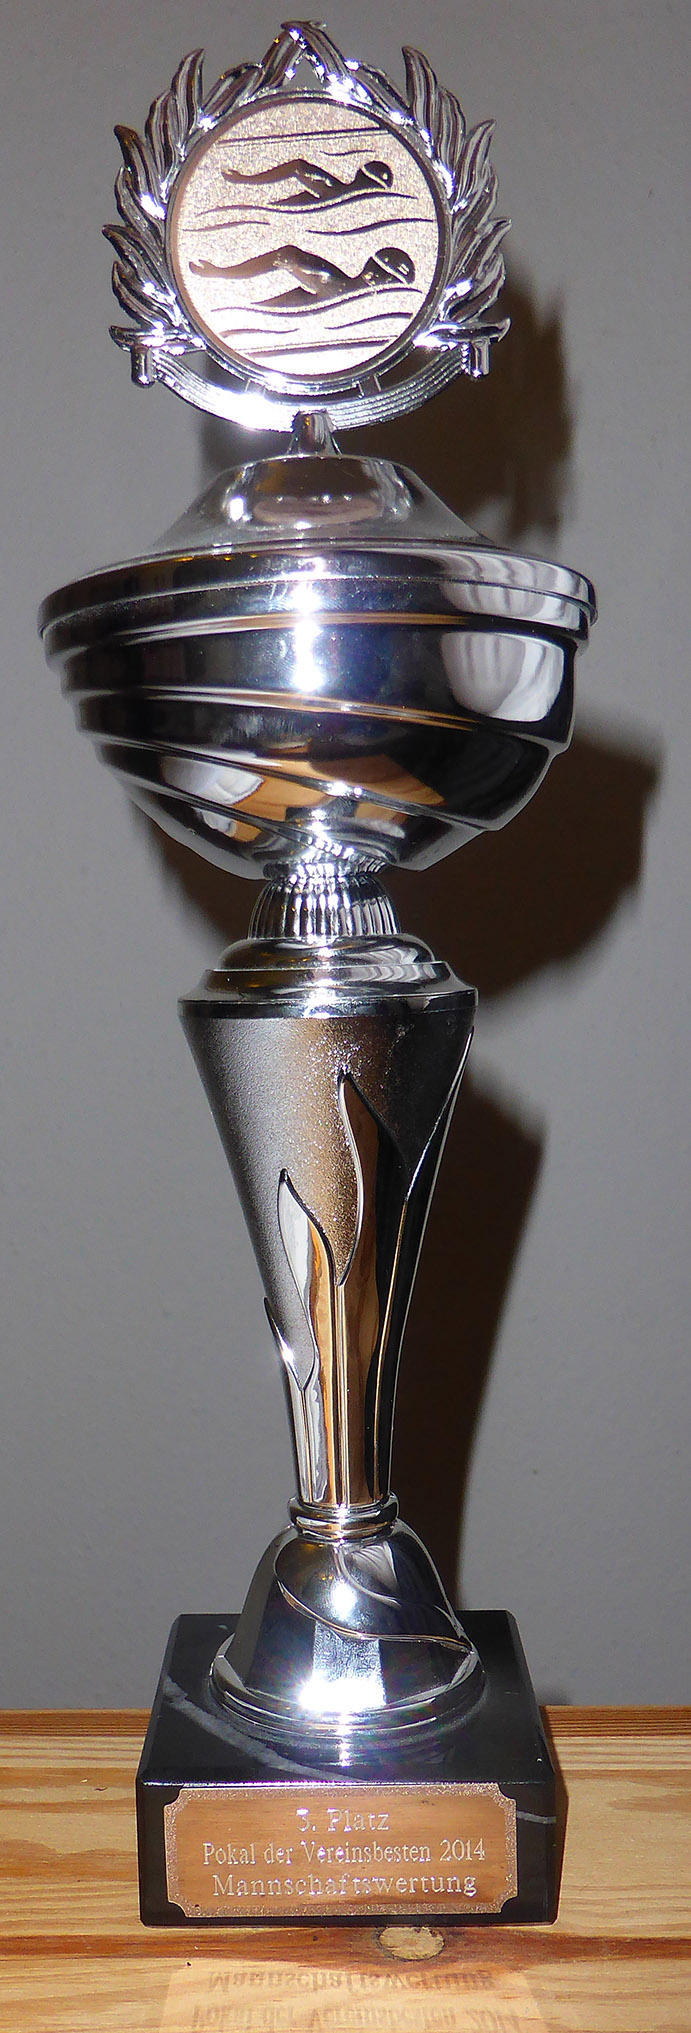 2014-05-31 PdV Pokal